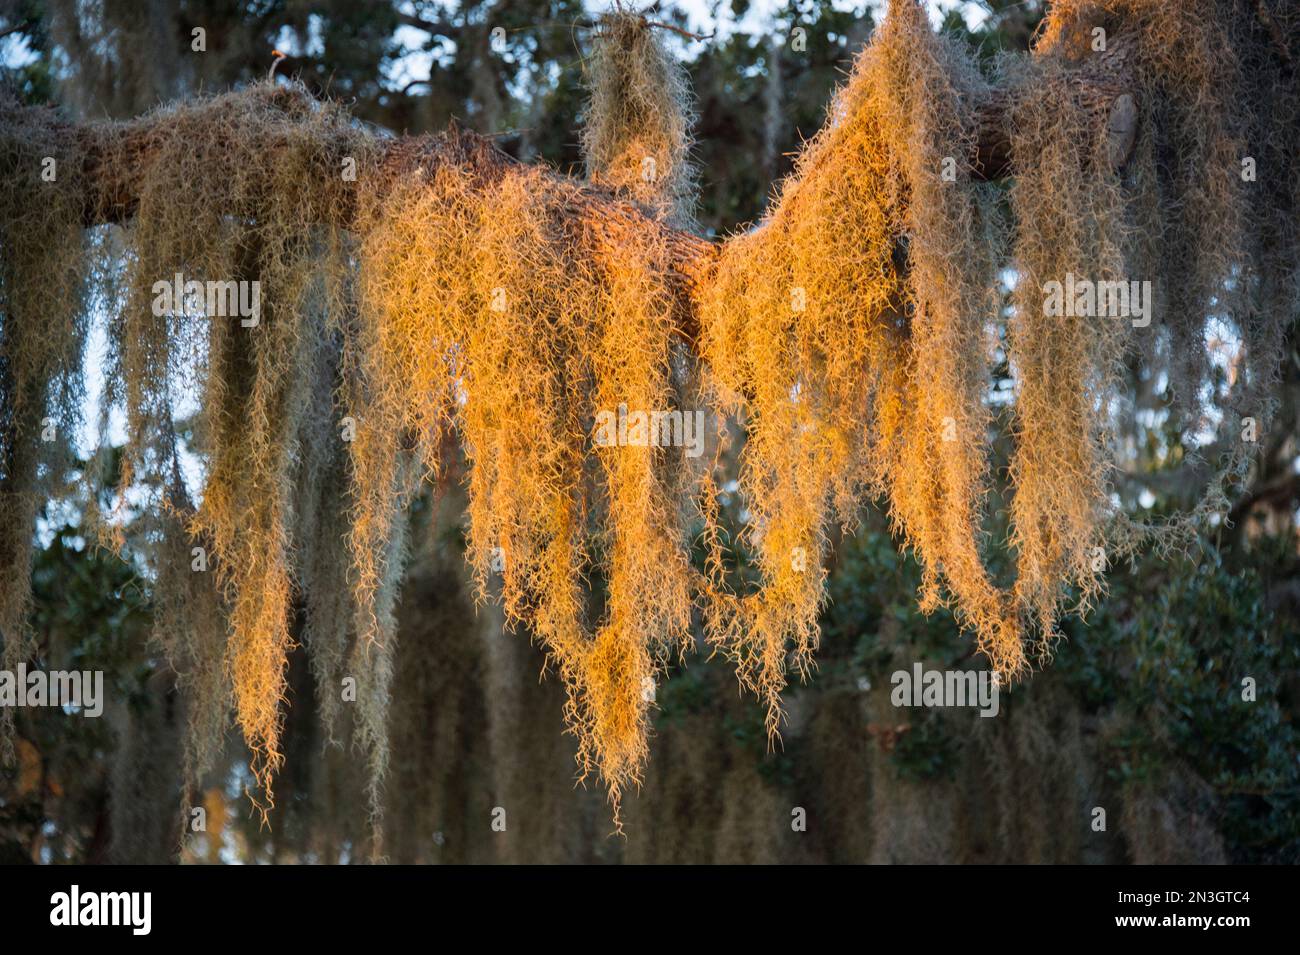 La mousse espagnole, une plante épiphytique, est suspendue dans un chêne vivant; Osprey, Floride, États-Unis d'Amérique Banque D'Images